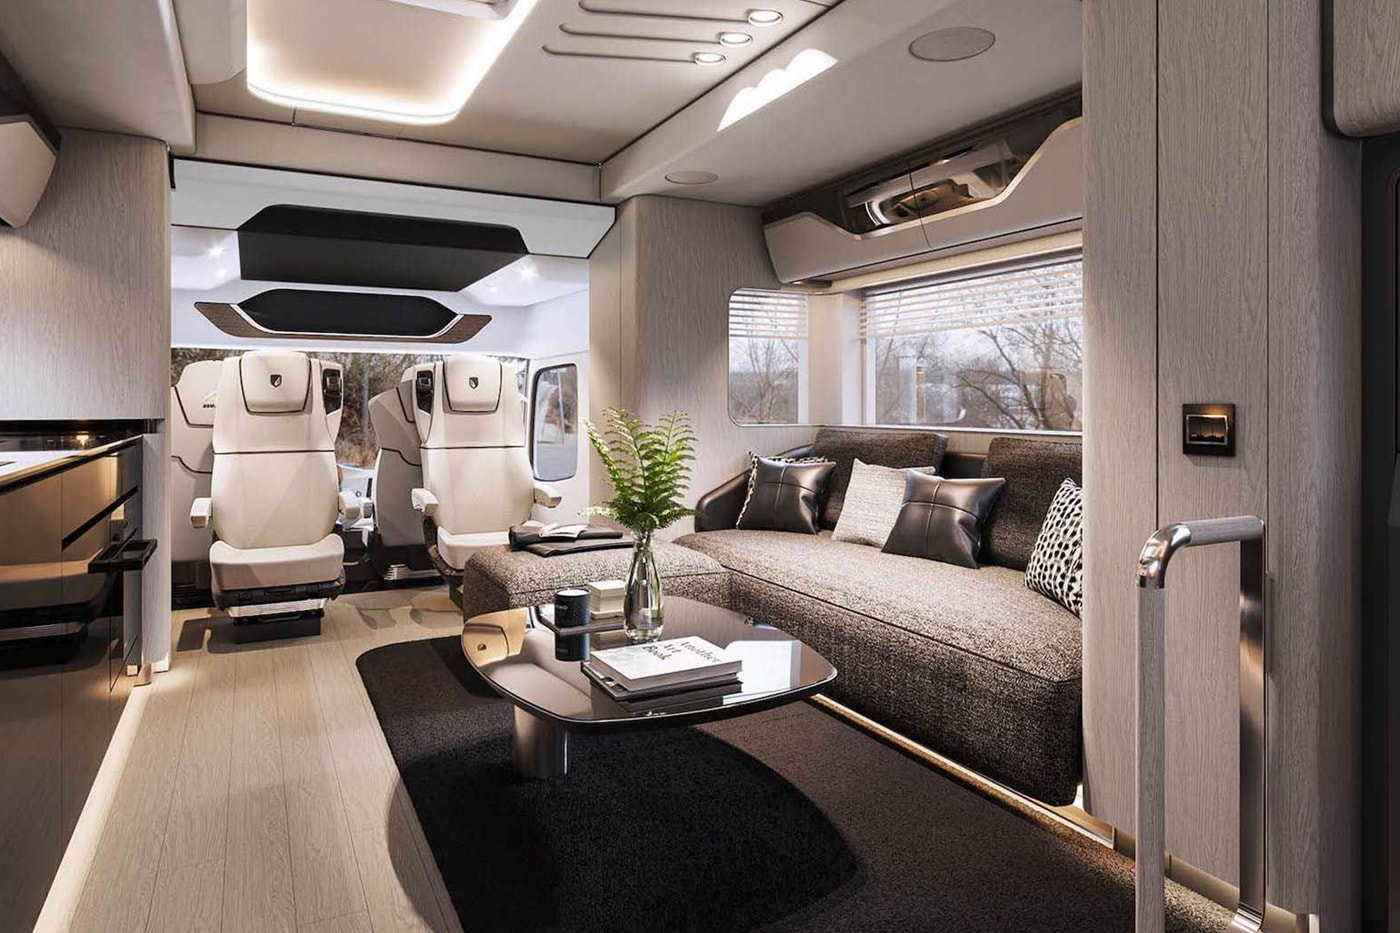 フェラーリも収納できるラグジュアリーなキャンピングカーが登場 Dembell Reveals a Luxurious Land Yacht small garage side package room king size bed Actros solar panel suite 